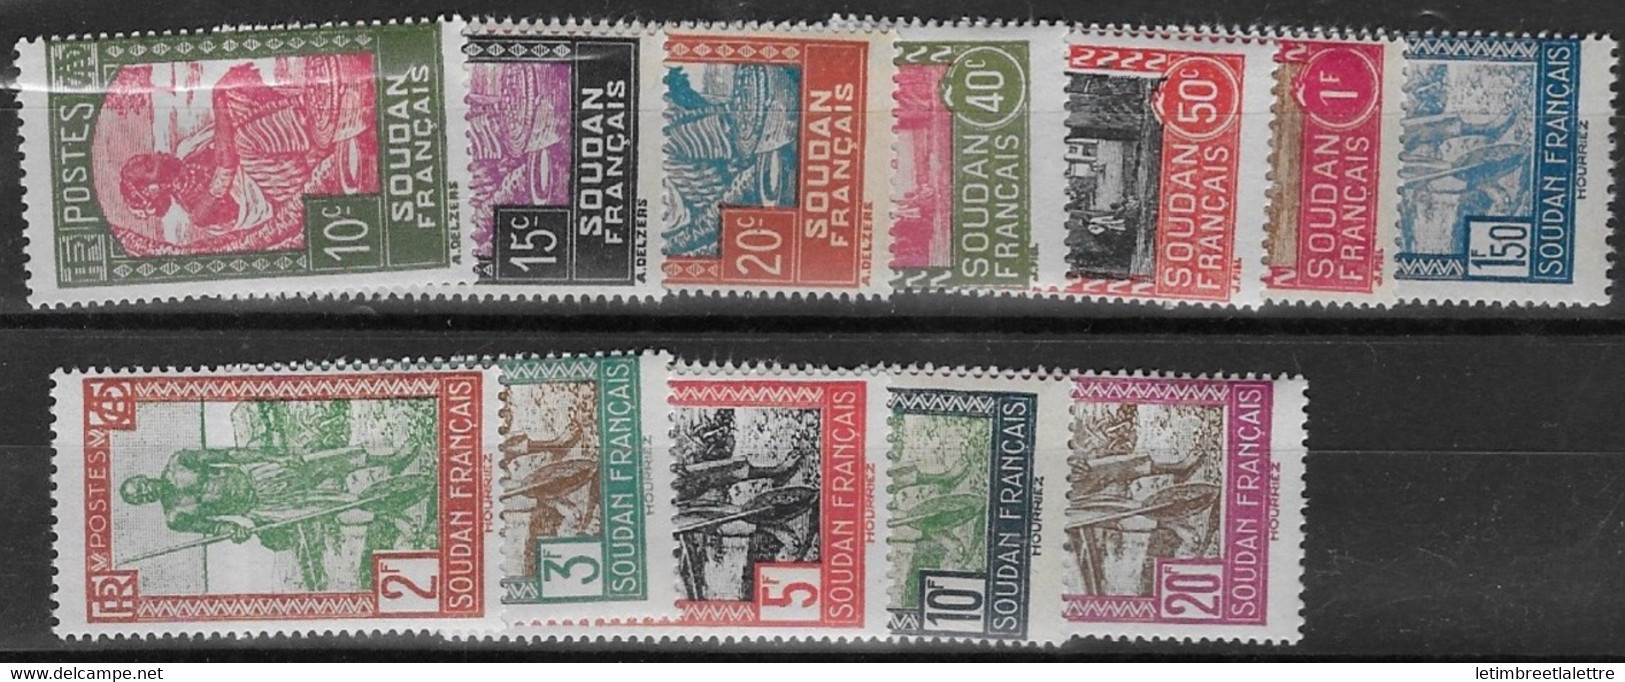 ⭐ Soudan - YT N° 64 / 65 / 66 / 70 / 72 / 79 / 81 Et 84 à 88 ** - Neuf Sans Charnière - 1931 / 1938 ⭐ - Unused Stamps